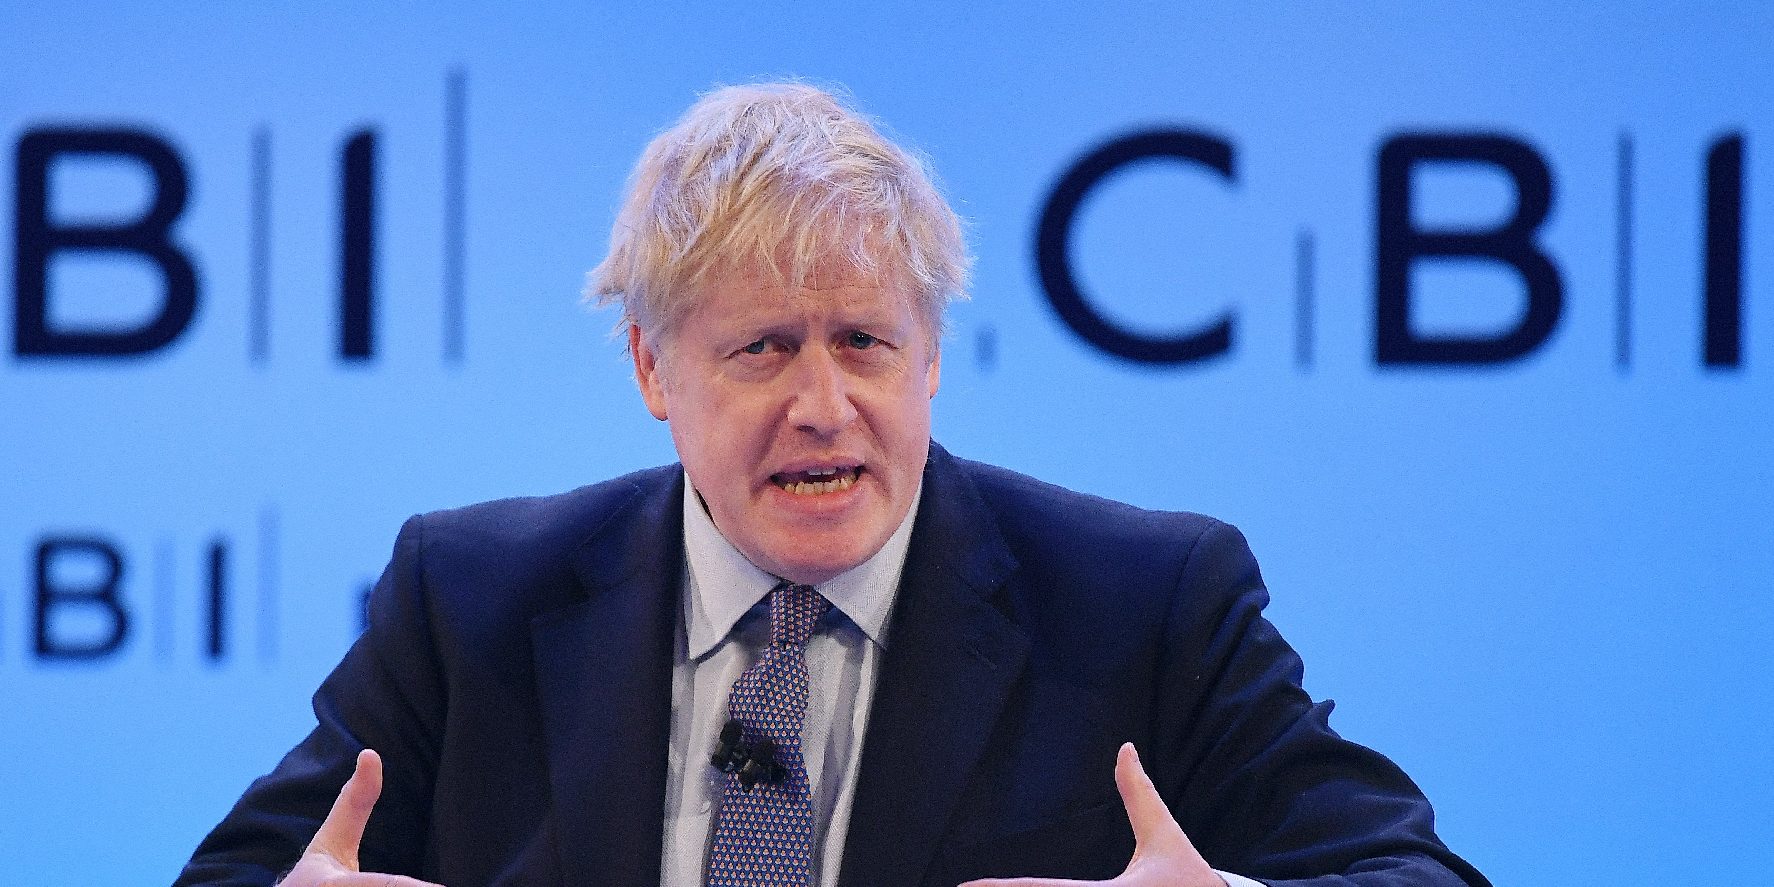 Johnson: Januárban kilépés az EU-ból, Corbyn: új megállapodás és népszavazás kell